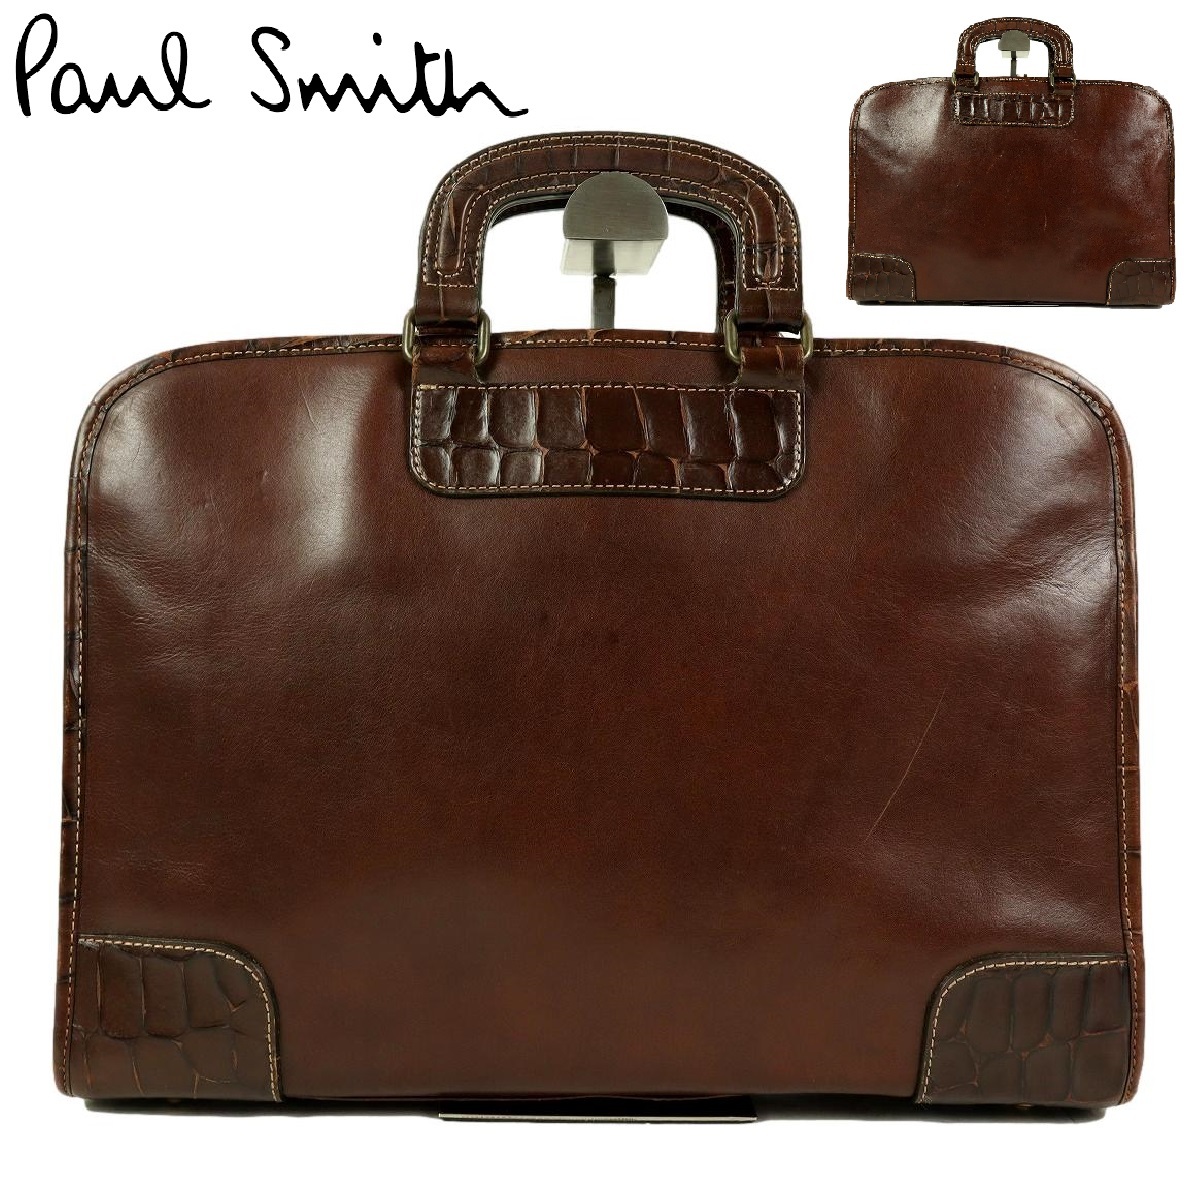 【B1694】【オールレザー】Paul Smith ポールスミス ビジネスバッグ ブリーフケース 書類カバン レザーバッグ 型押し